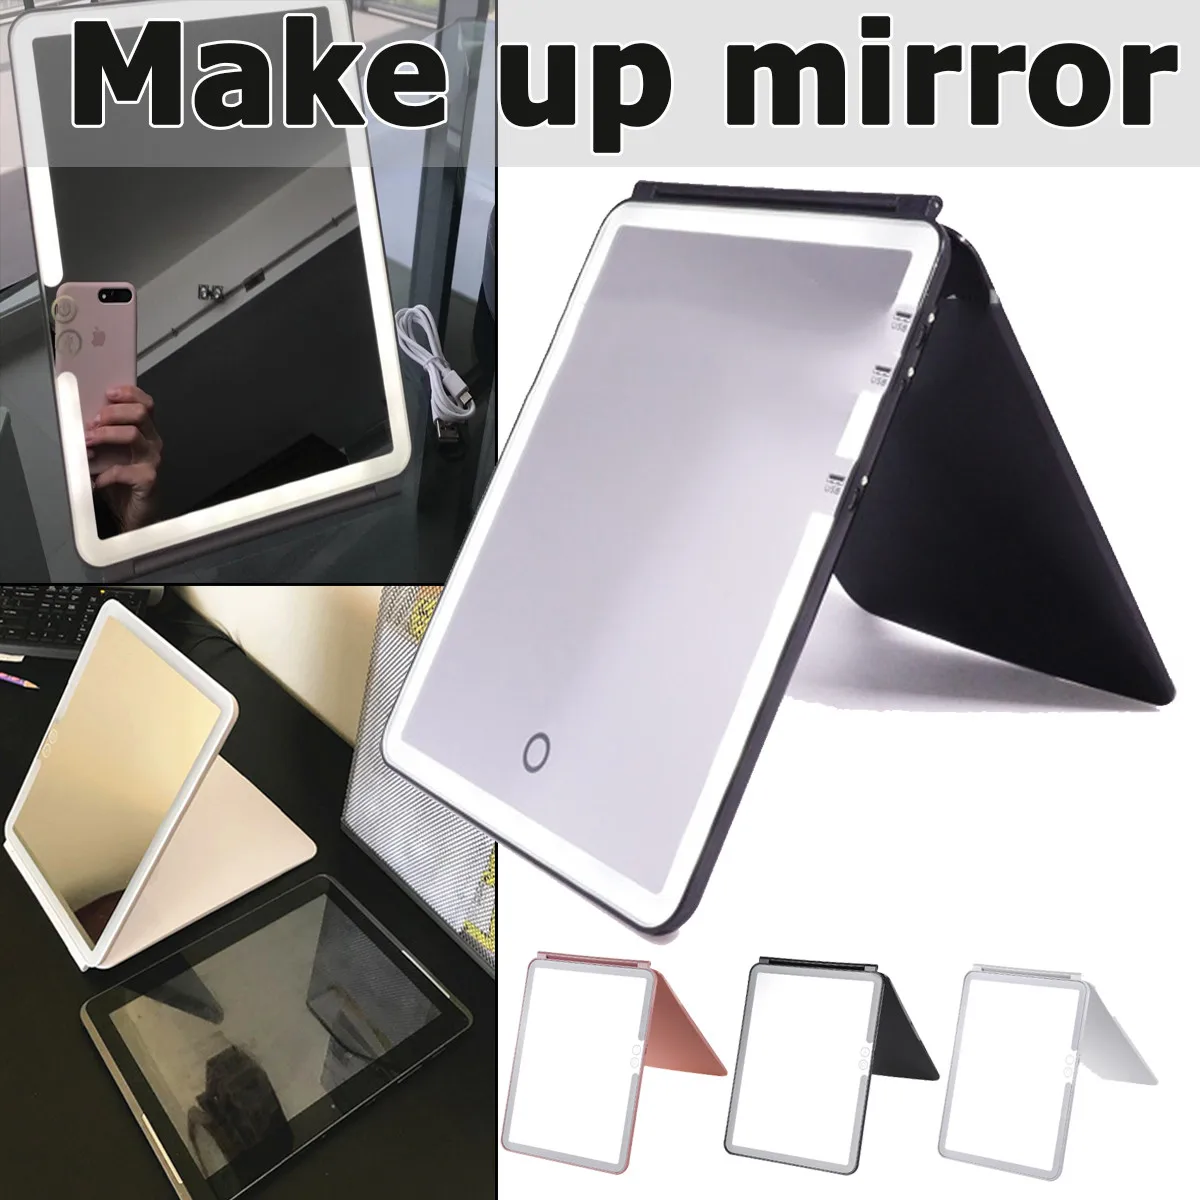 

Черное/белое/розовое настольное USB Сенсорное зеркало для макияжа светодиодный Ной подсветкой, зеркало для макияжа для студентов/белые Ошей...